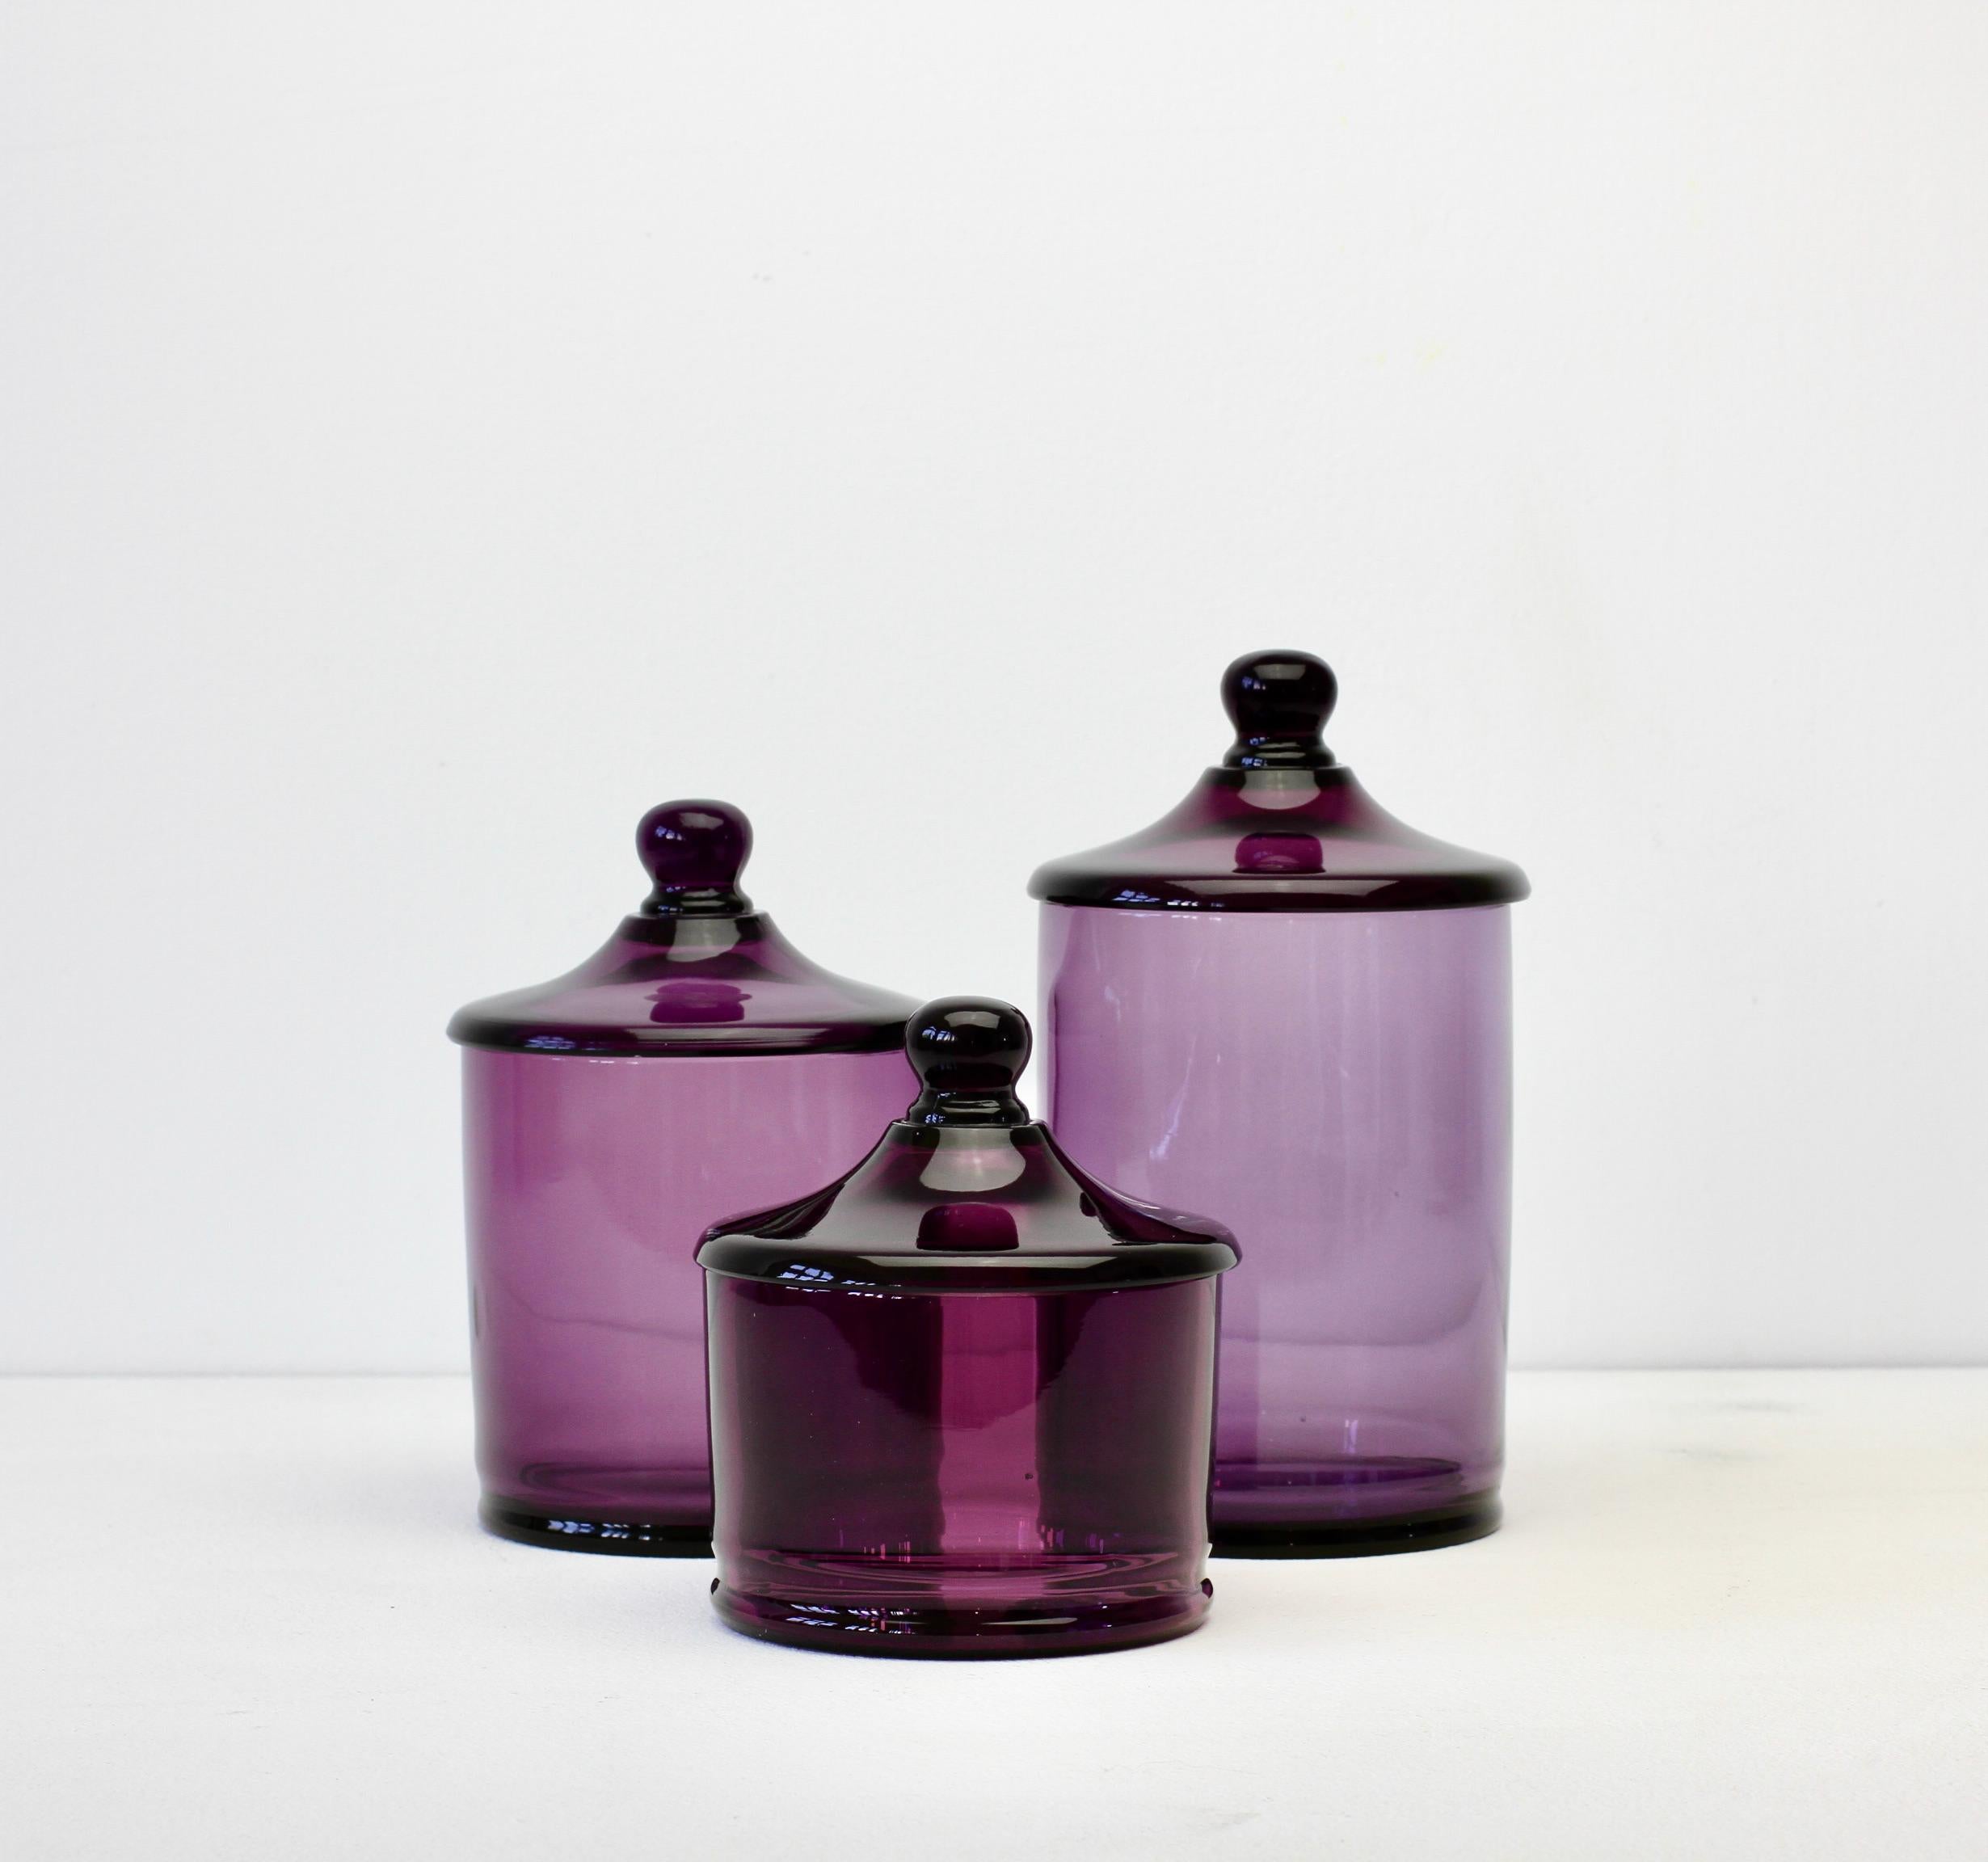 Seltener Satz von drei venezianischen Murano violett gefärbt / farbigen Glas Apotheker Gläser oder Urnen mit Deckel. Wunderschönes italienisches Mid-Century-Glas und perfekt für die Aufbewahrung von Süßigkeiten oder Snacks in der Küche oder für